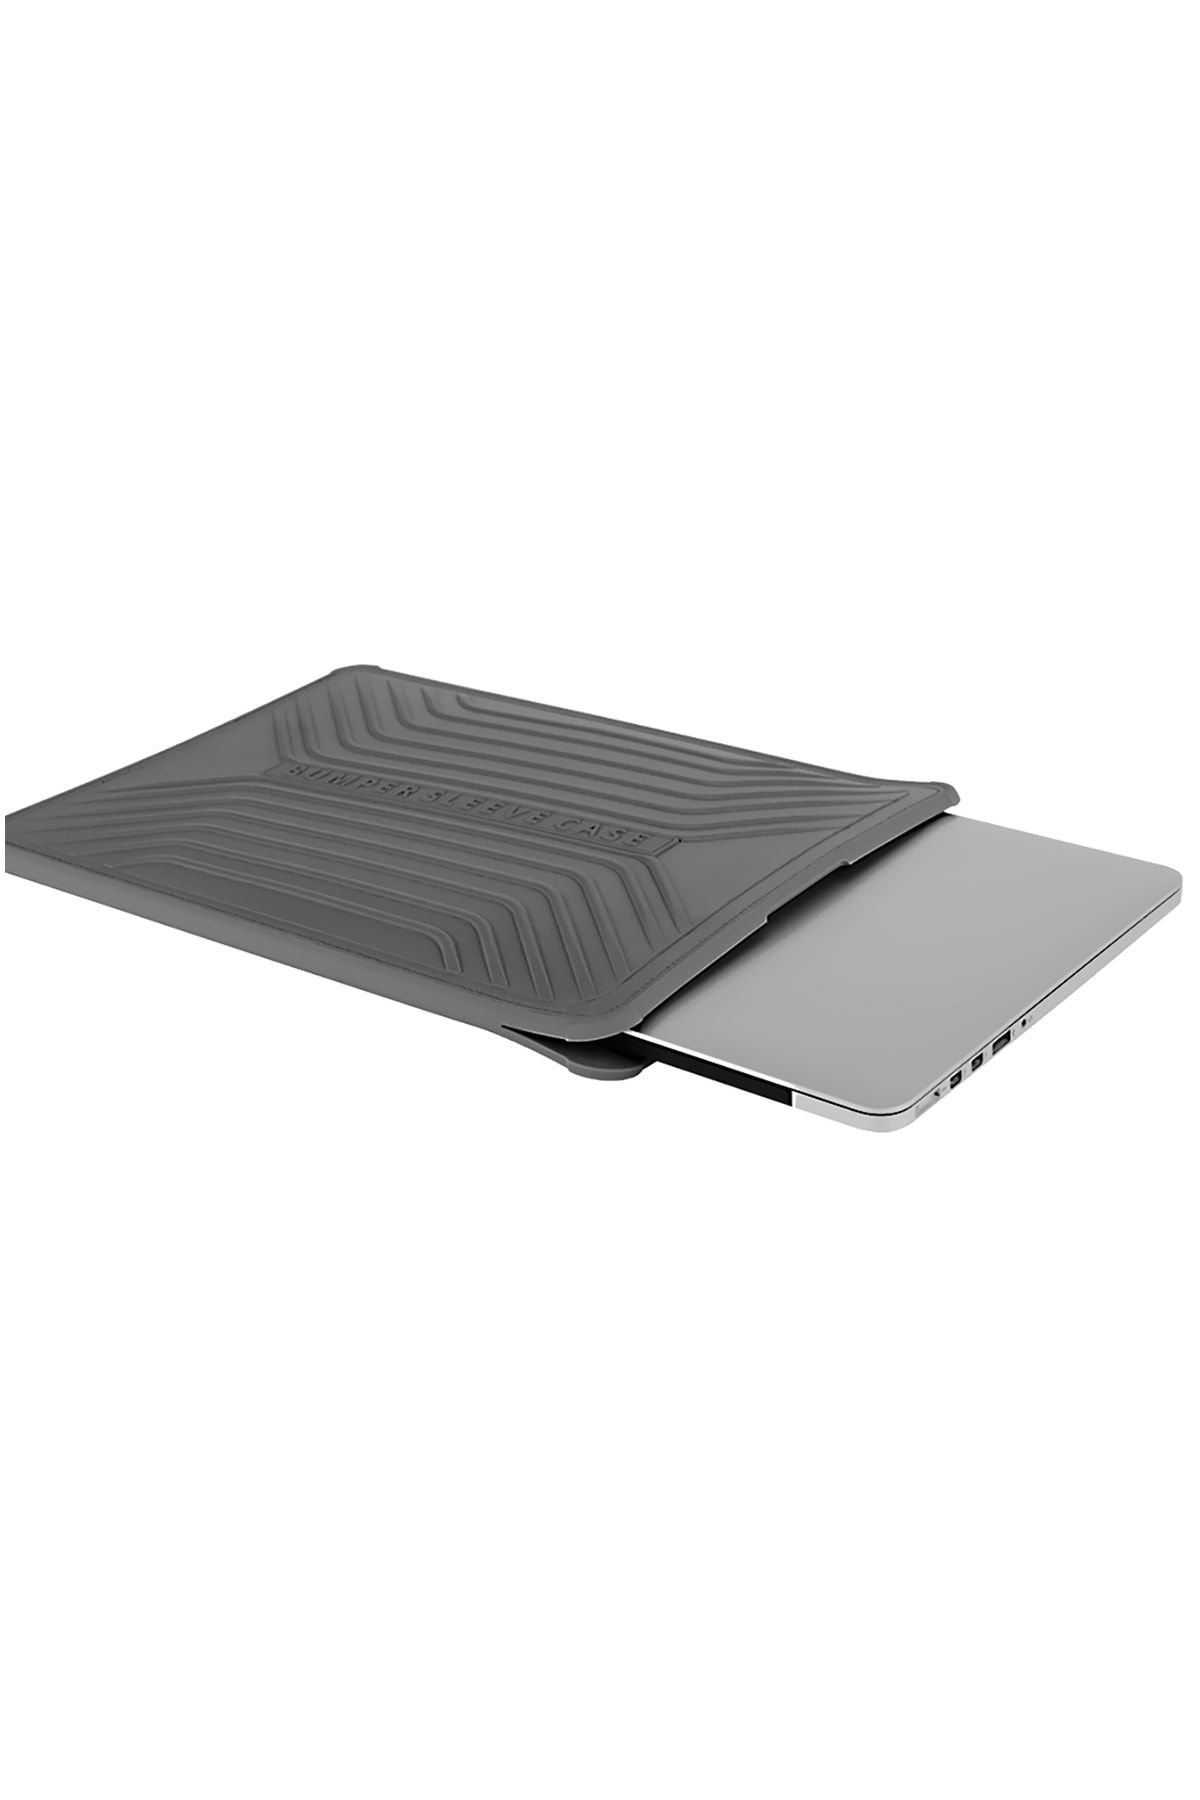 WIWU McStorey Laptop Çantası Macbook Air Pro 13inc El Çantası Type-C Girişli 2016 Sonrası